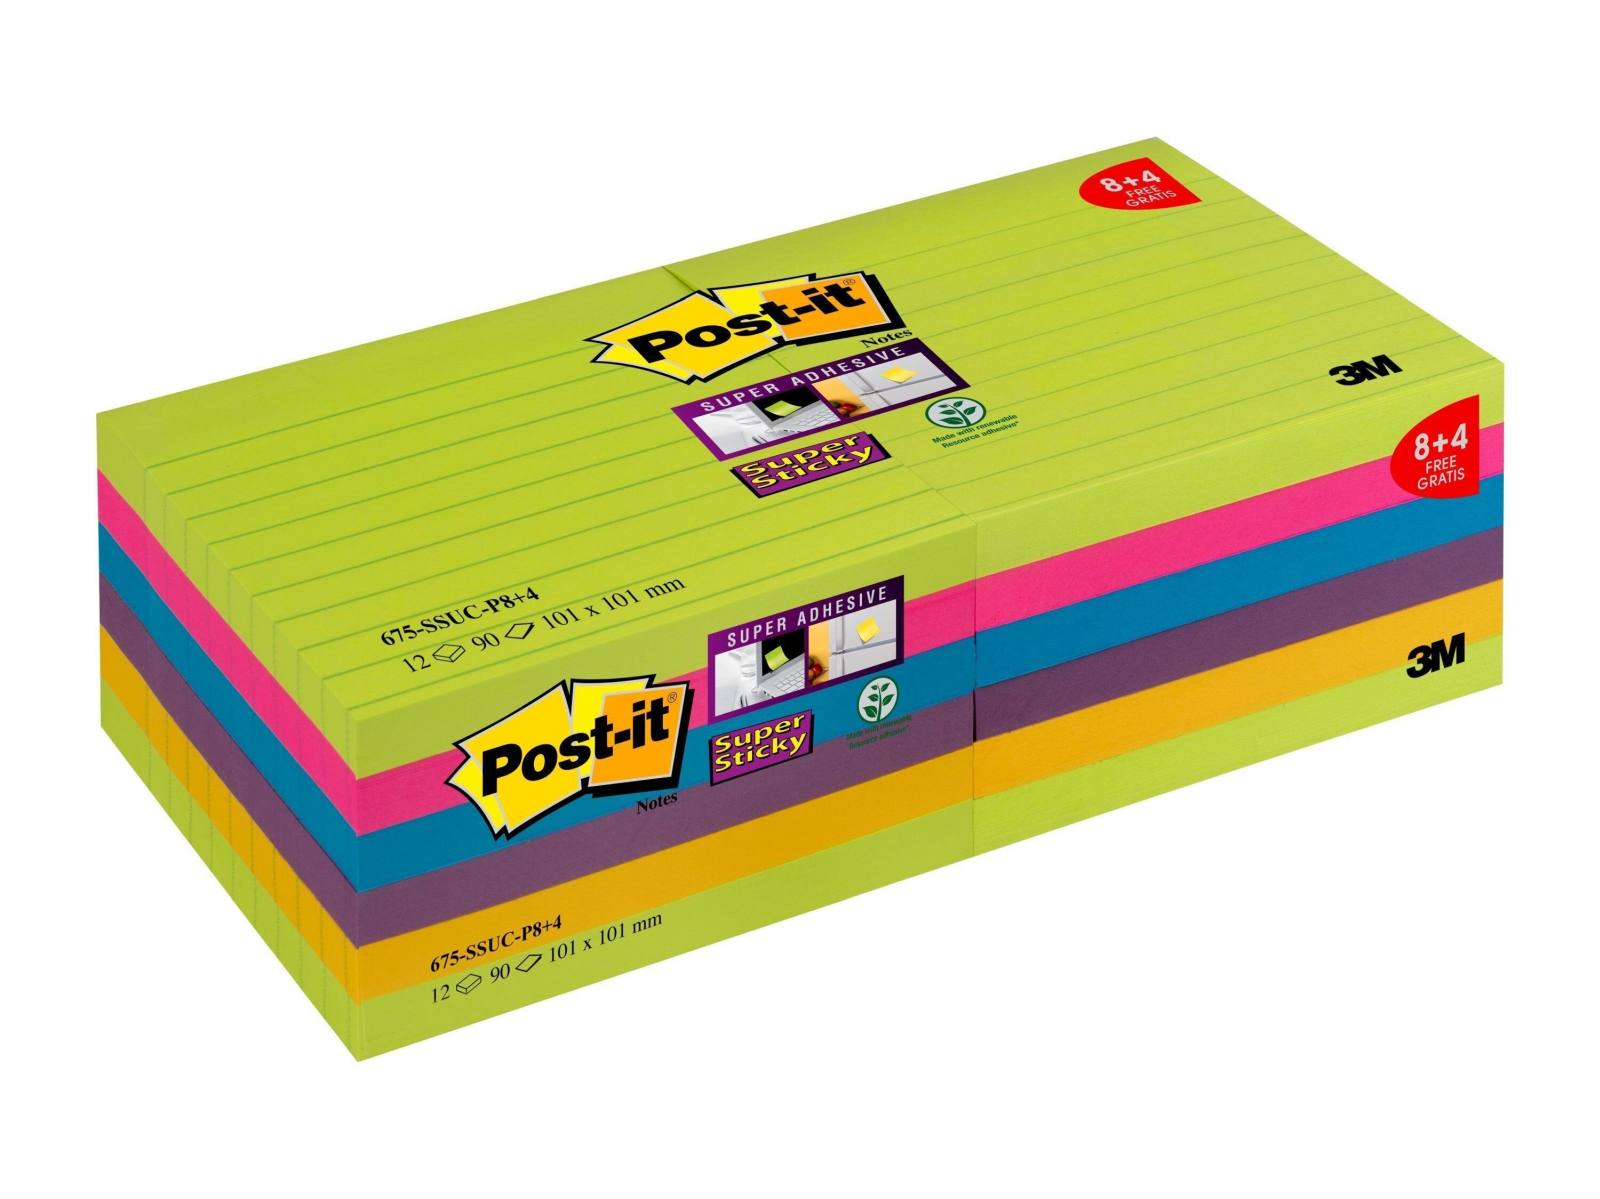 3M Post-it Super Sticky Notes Promotion 4690-SSUC-P4+2 6 kpl 90 arkkia kussakin erikoishintaan, neonvihreä, ultra pinkki, keltainen, sininen, neonoranssi, 101 mm x 152 mm, vuorattu, PEFC-sertifioitu